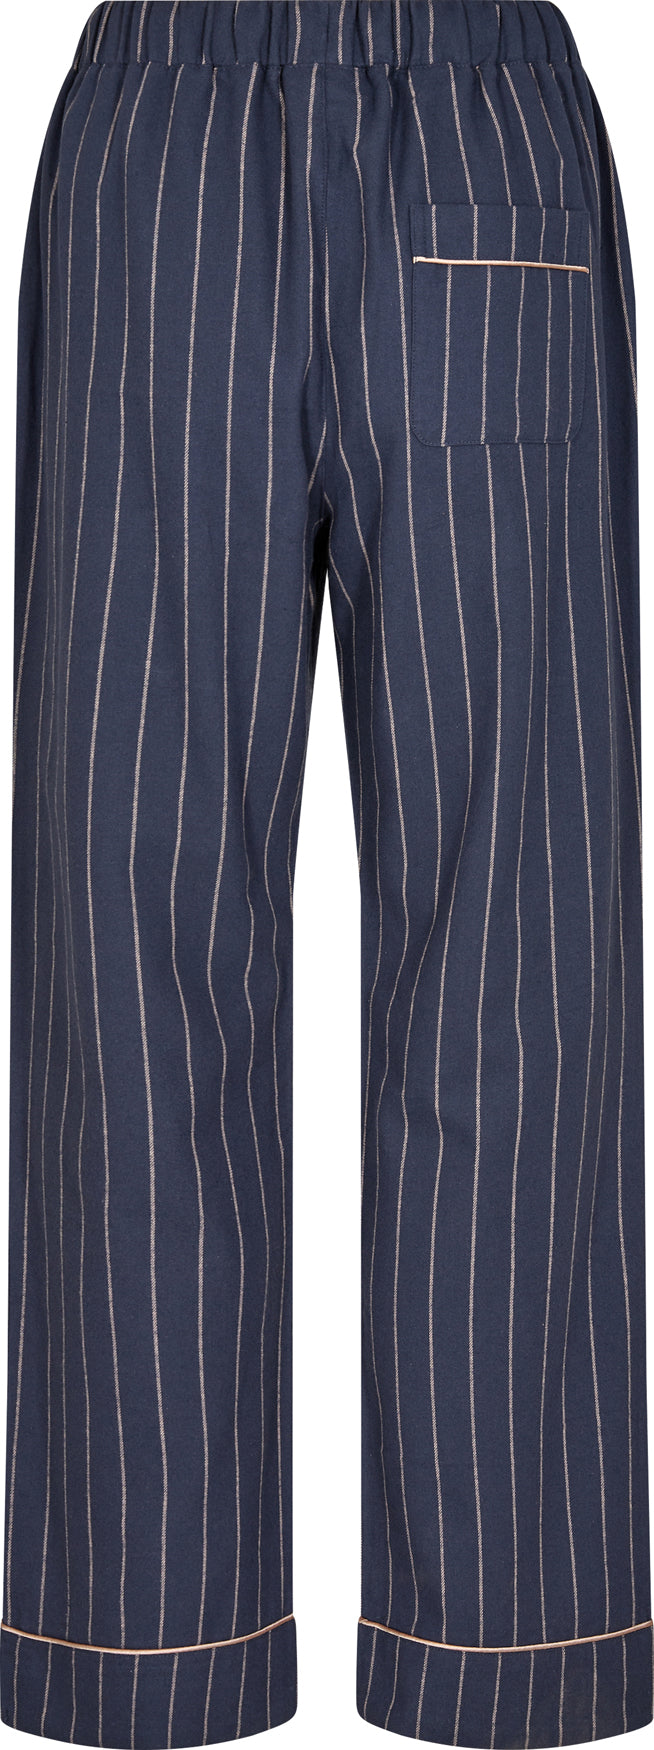 Pyjamasbukser 100% økologisk bomuld - blå